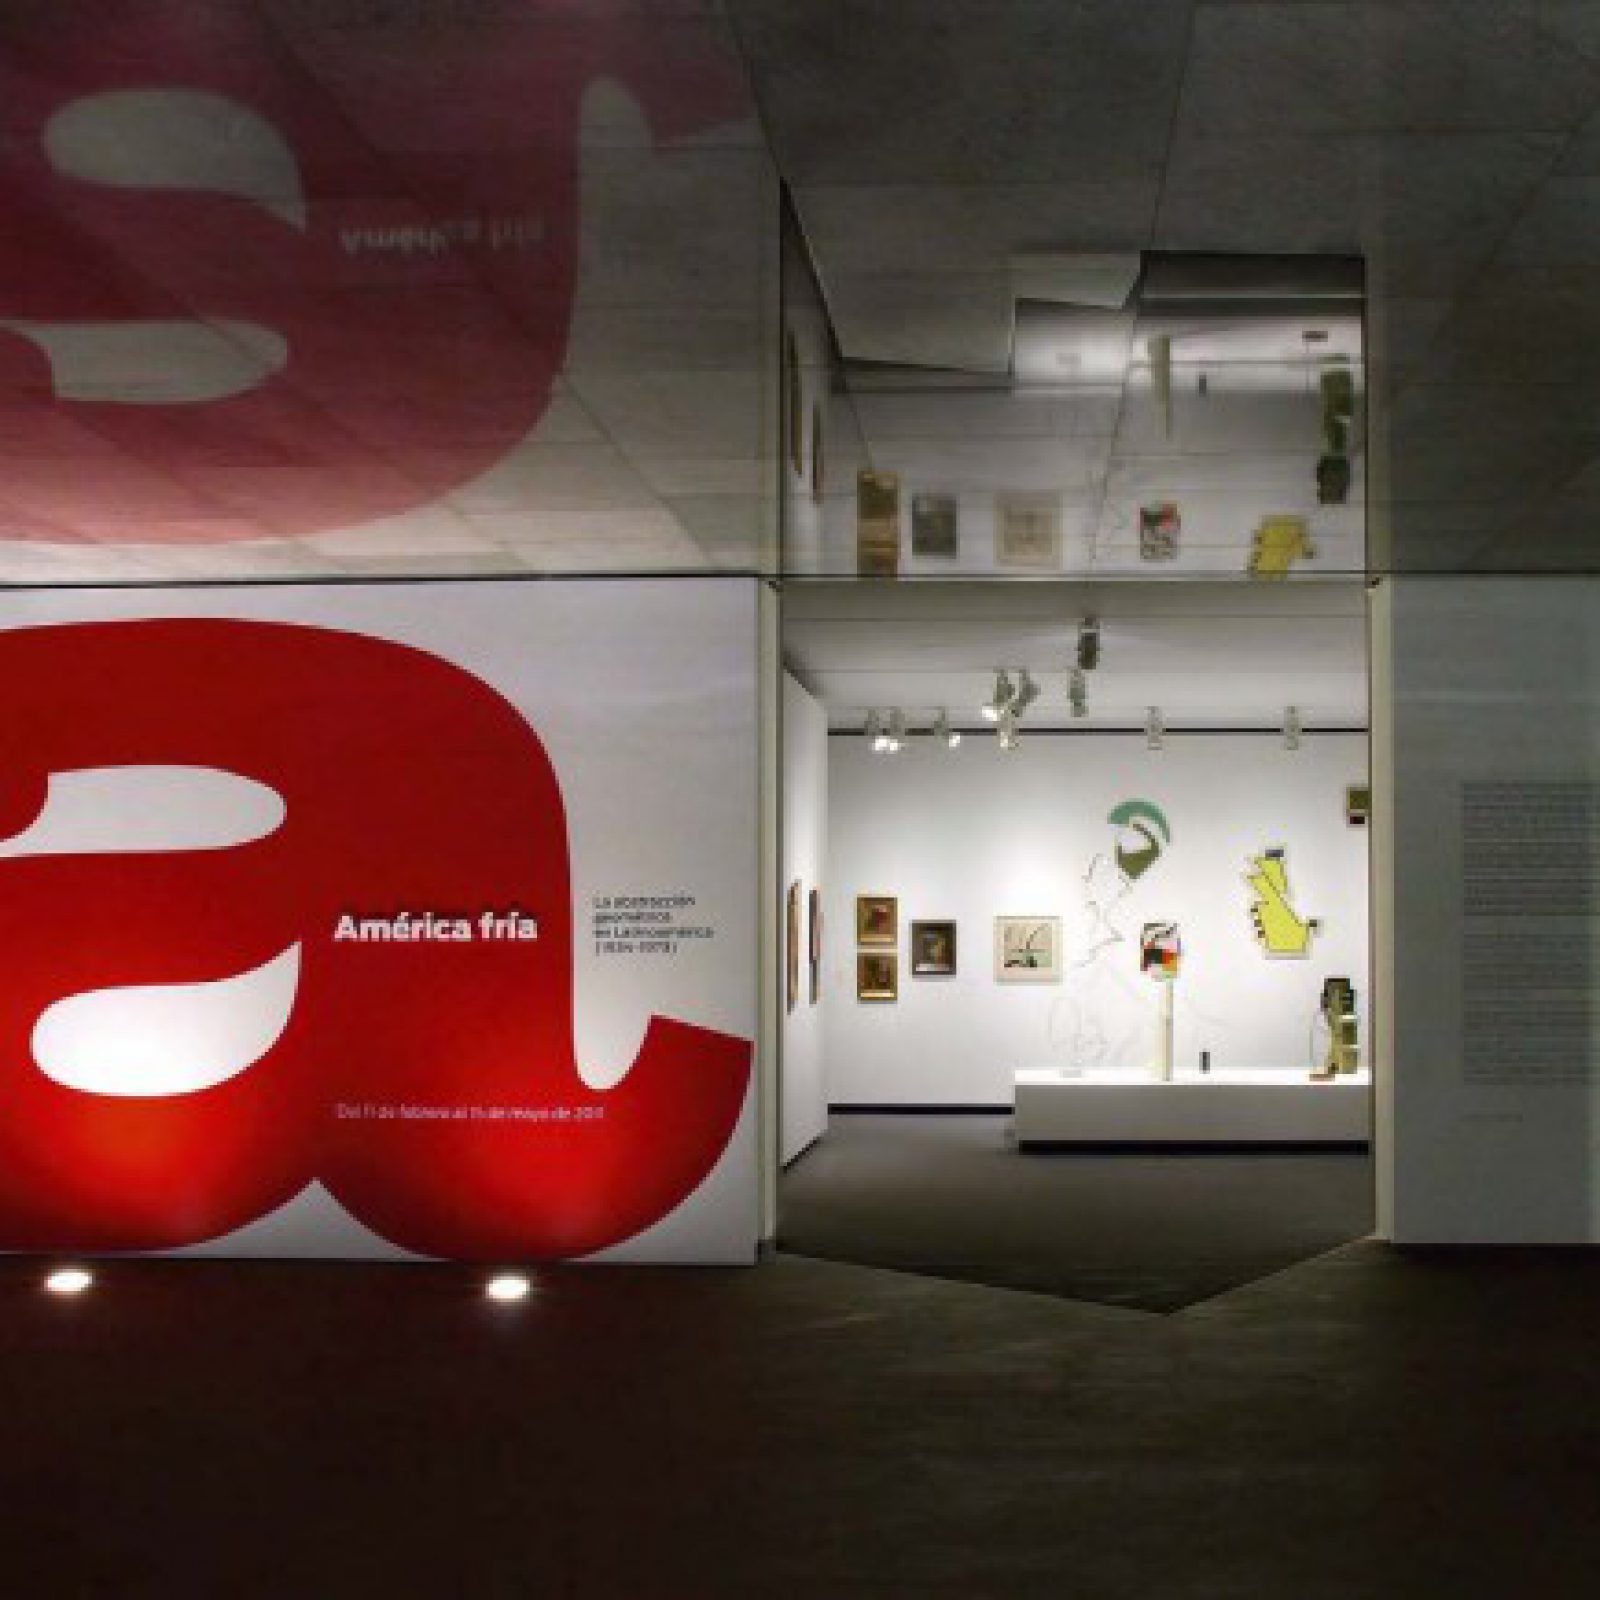 Vista de la exposición América Fría en la Fundación Juan March, Madrid, 2011. Cortesía: Osbel Suárez / Fundación Juan March